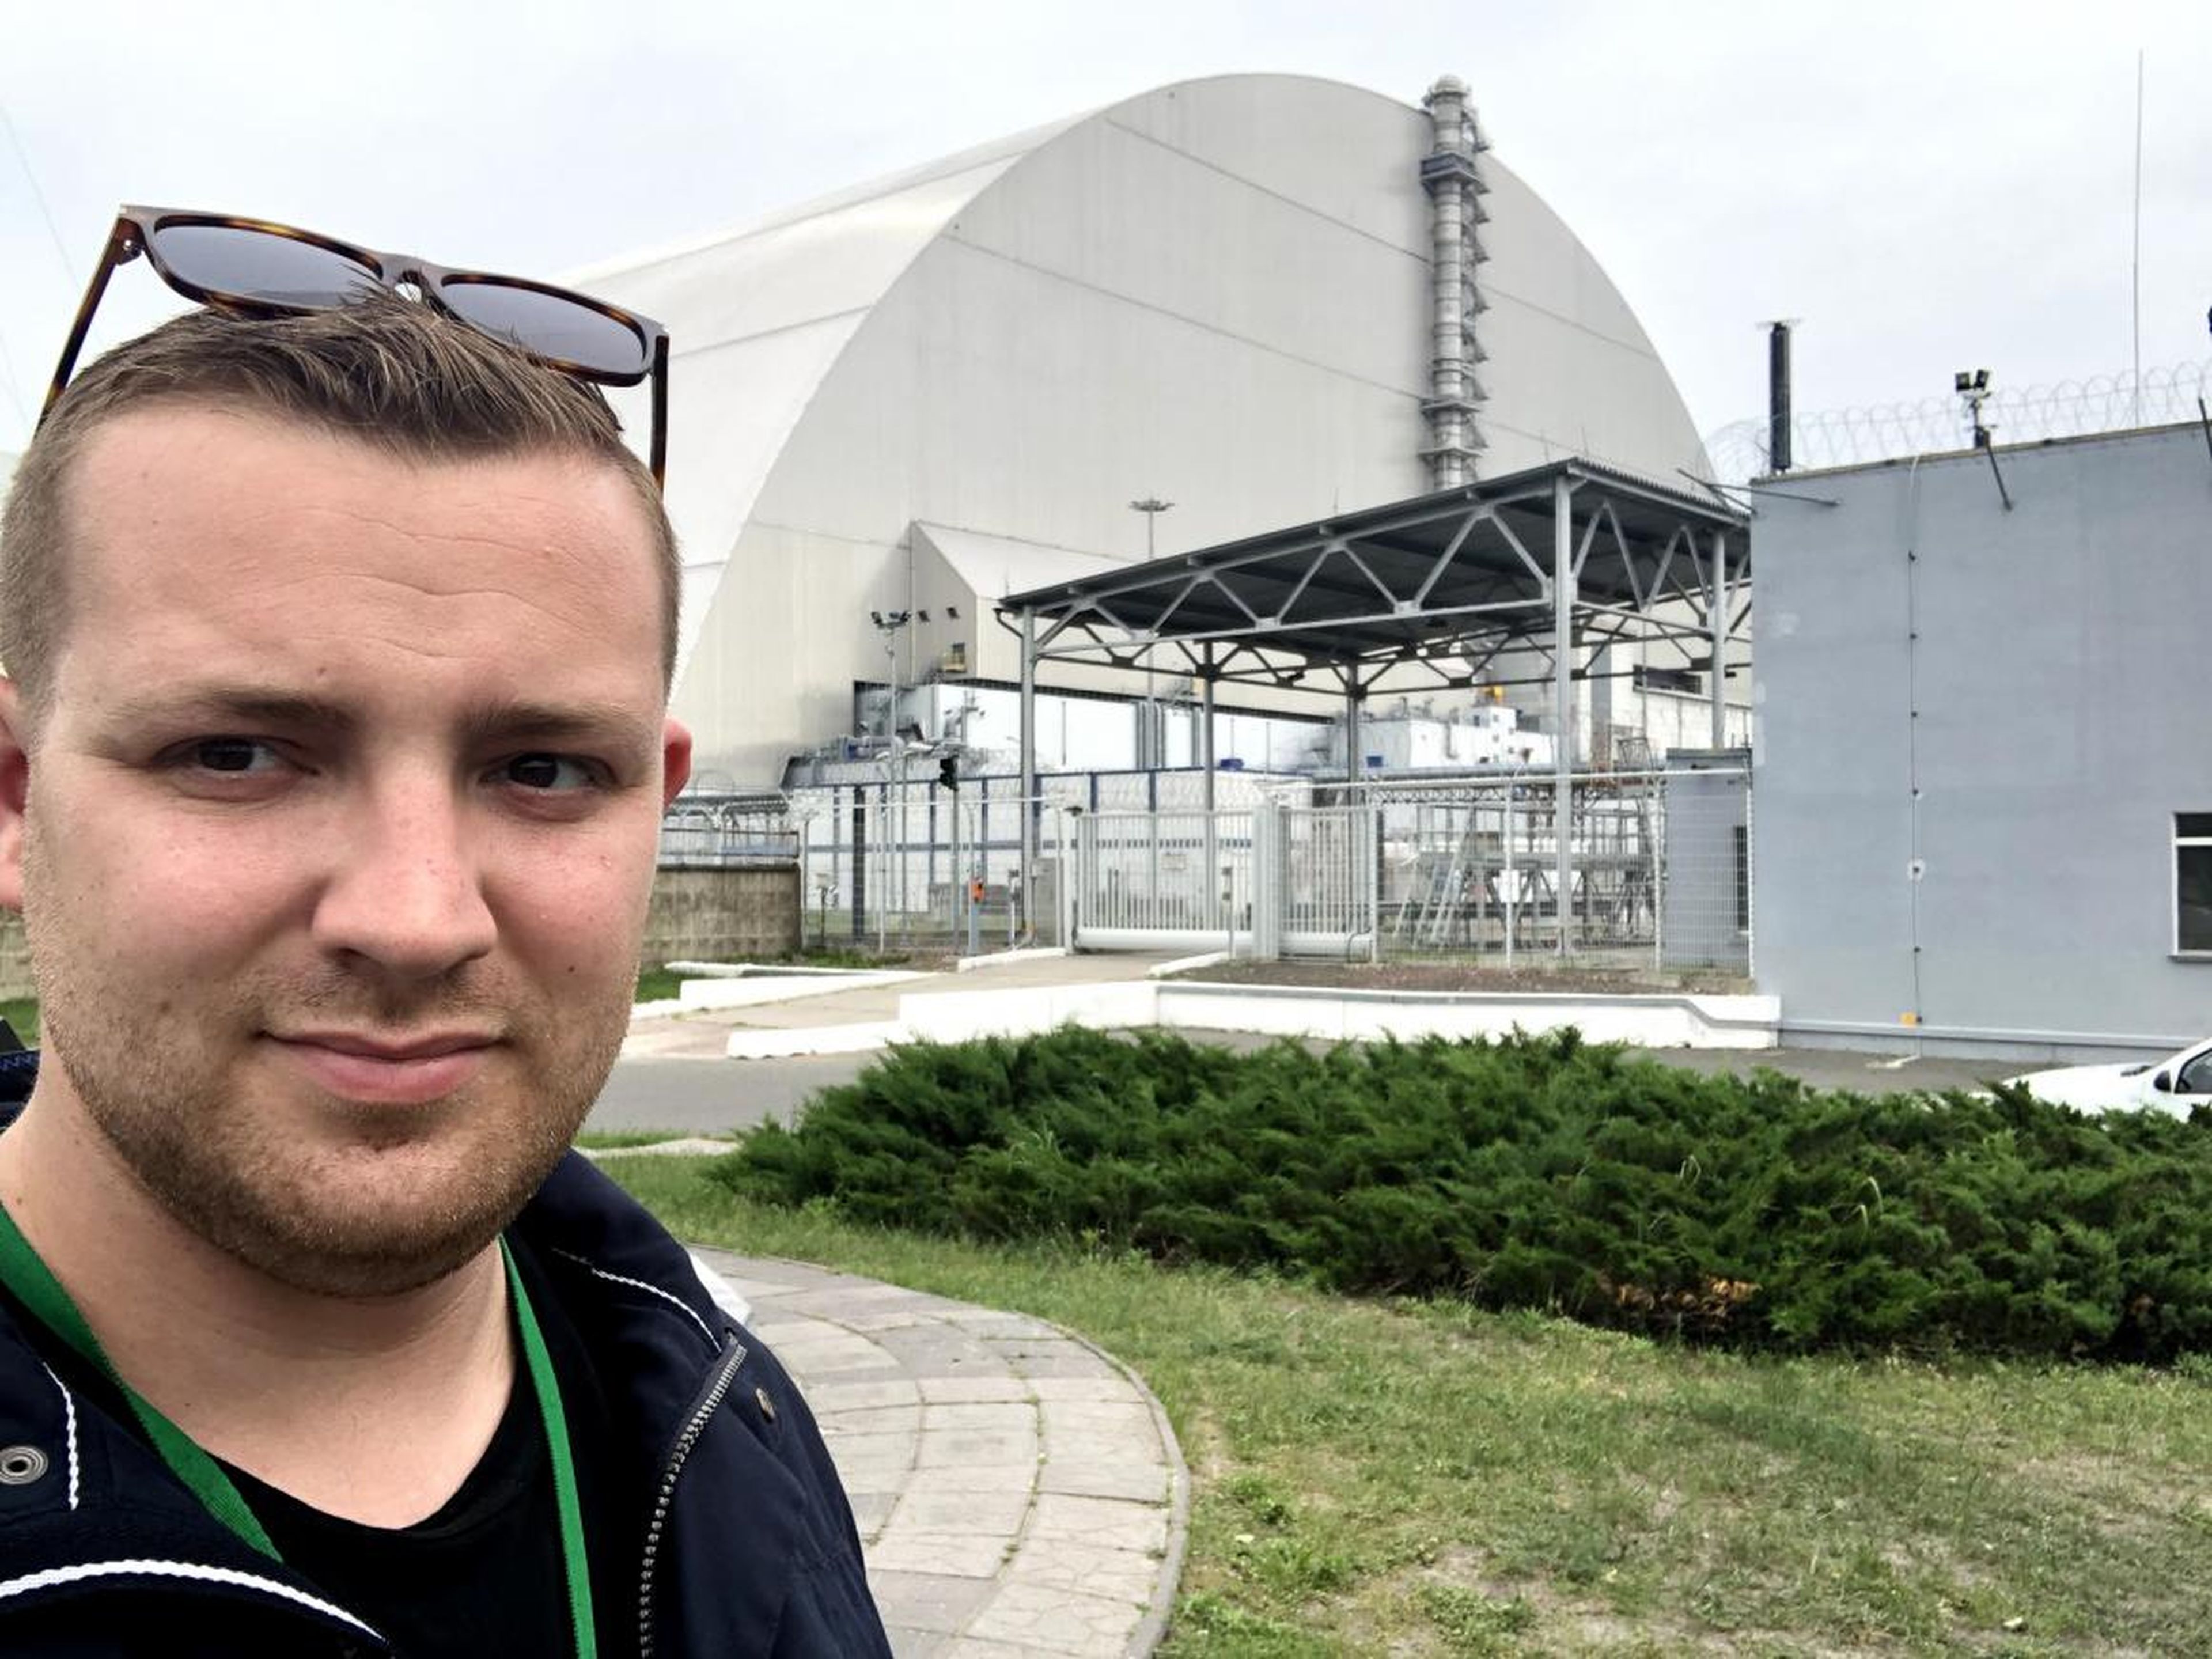 Durante un recorrido por Chernobyl, no puedes tocar el suelo, debes usar pantalones largos, y saber cuáles son los edificios al borde del colapso es imprescindible.